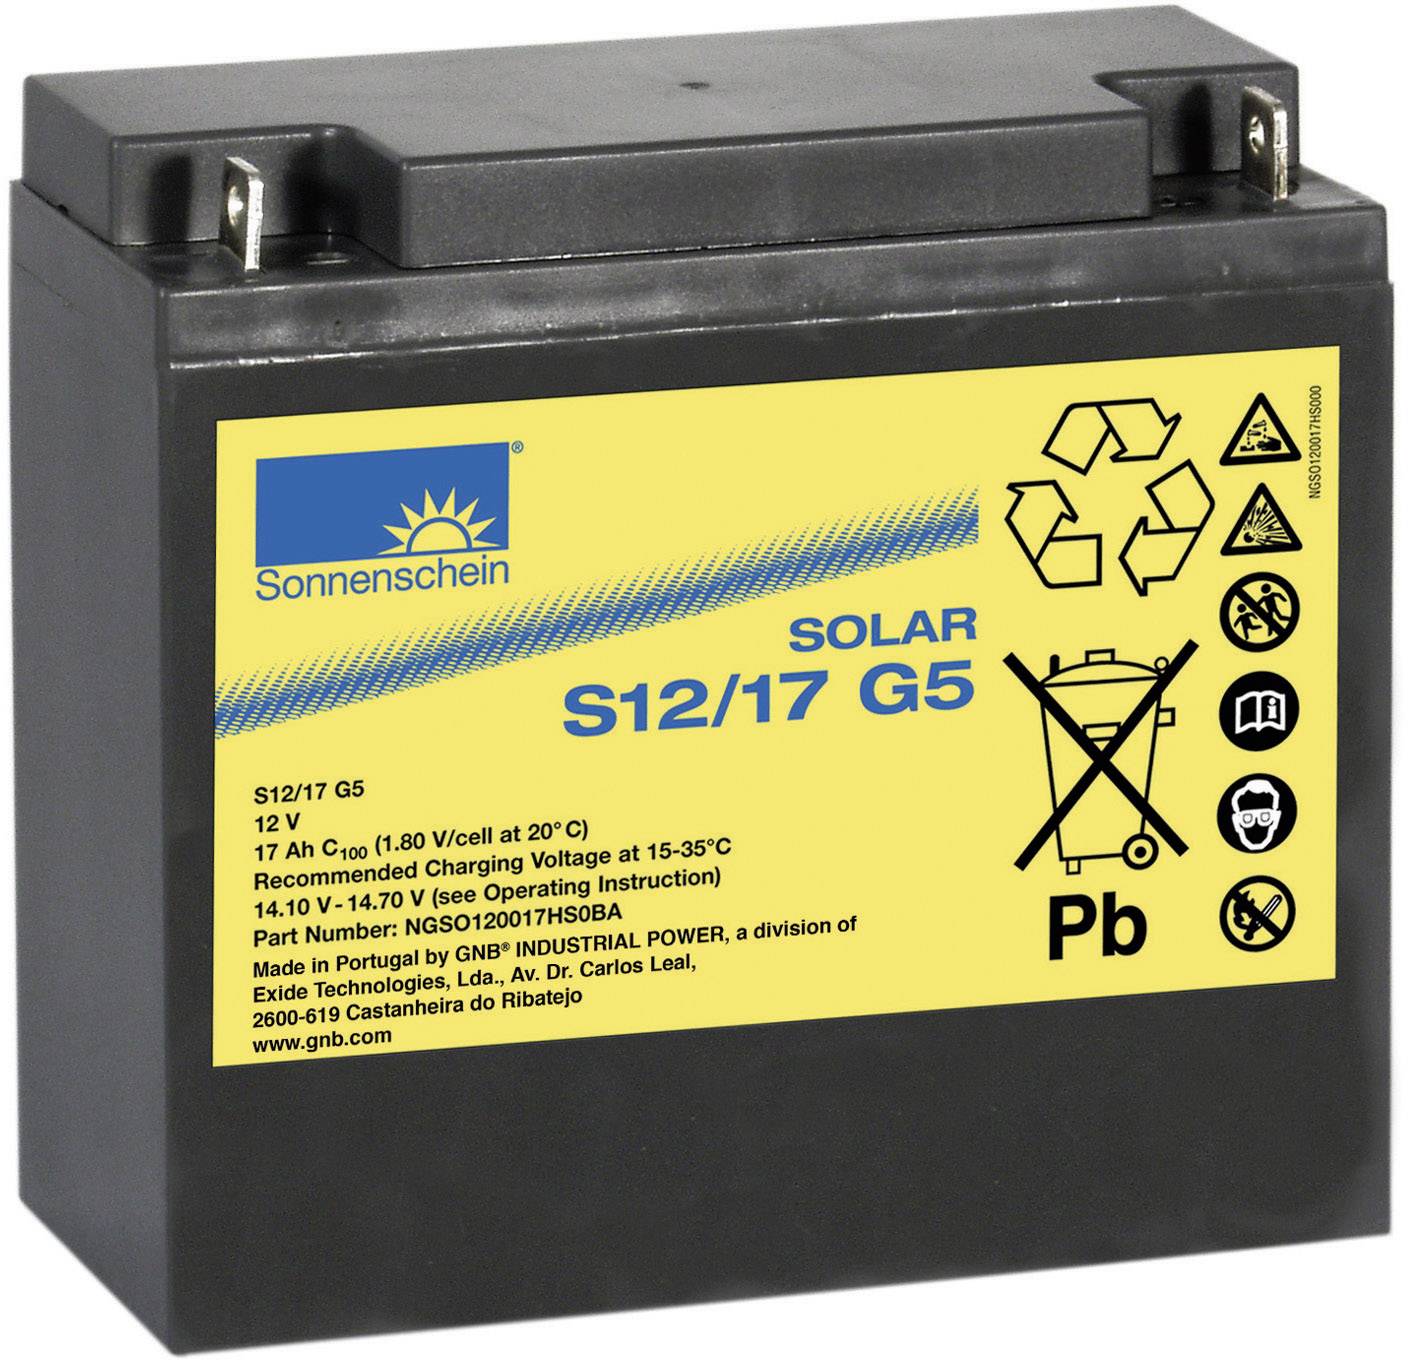 Battery s. Sonnenschein аккумуляторы 6 v 63 Ah. Аккумуляторная батарея Sonnenschein pc12/180ft 12v165ah. Аккумулятор Sonnenschein a512/30 g6 (12v / 30ah). Аккумулятор DS 50 Sonnenschein 12v 50ah 225a (din) 375a(SAE).